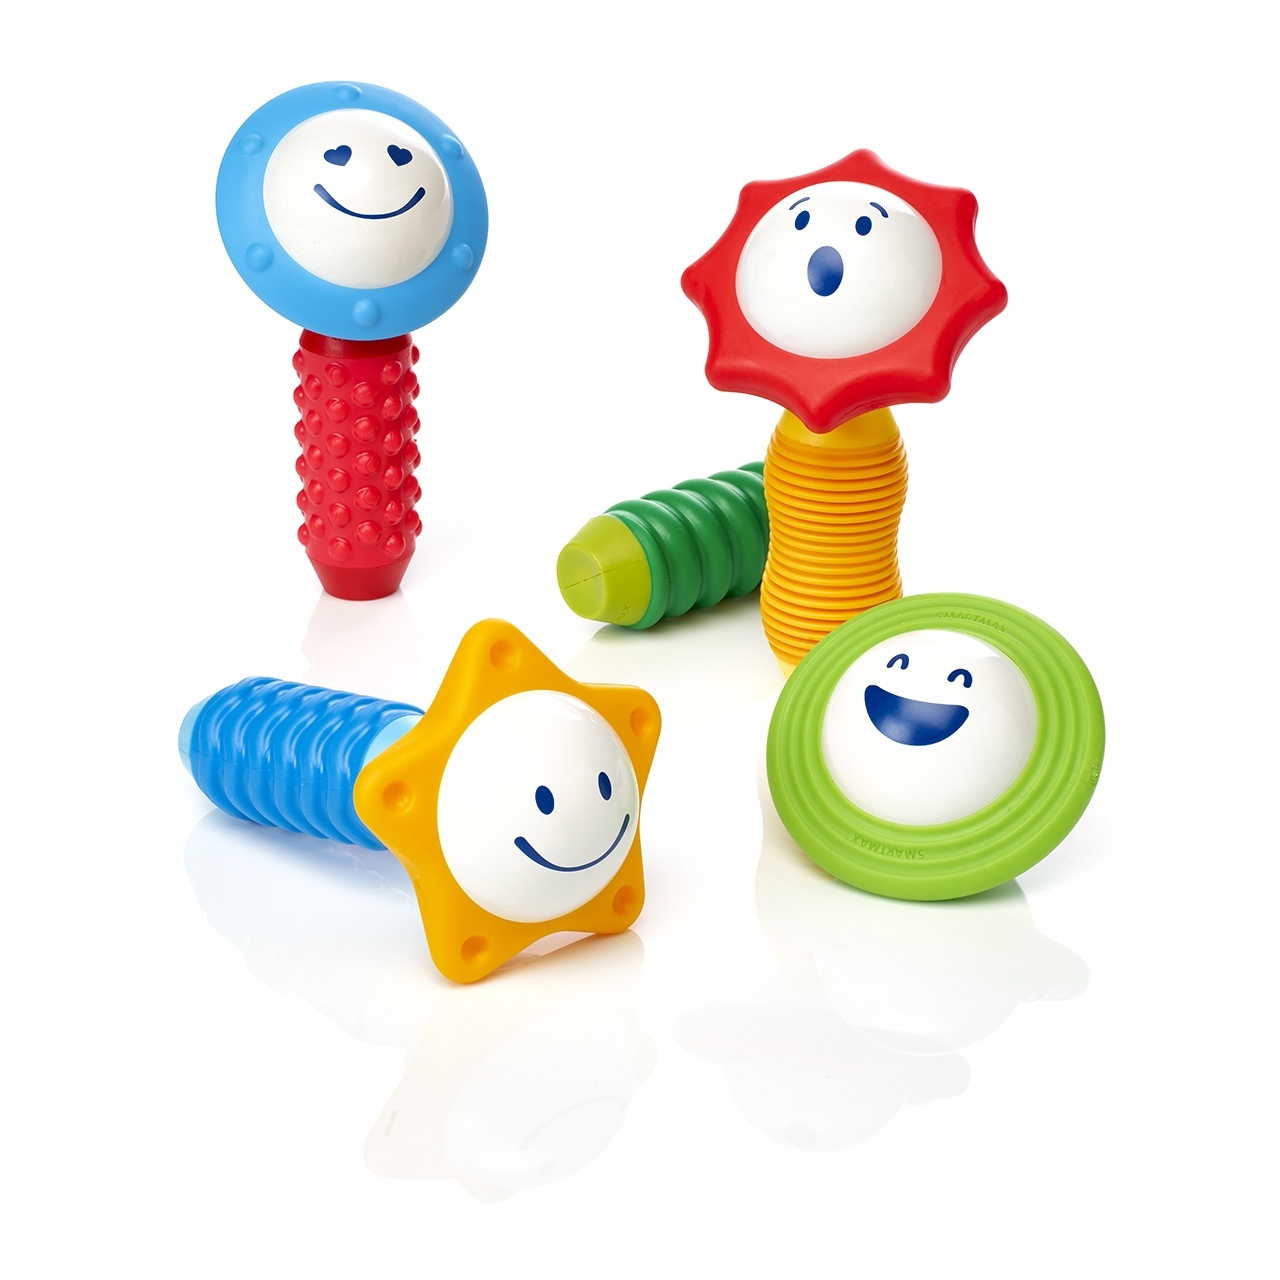 Fabriek Brullen Lada Speelgoed voor kinderen van 1 jaar | Spelen is makkelijker leren -